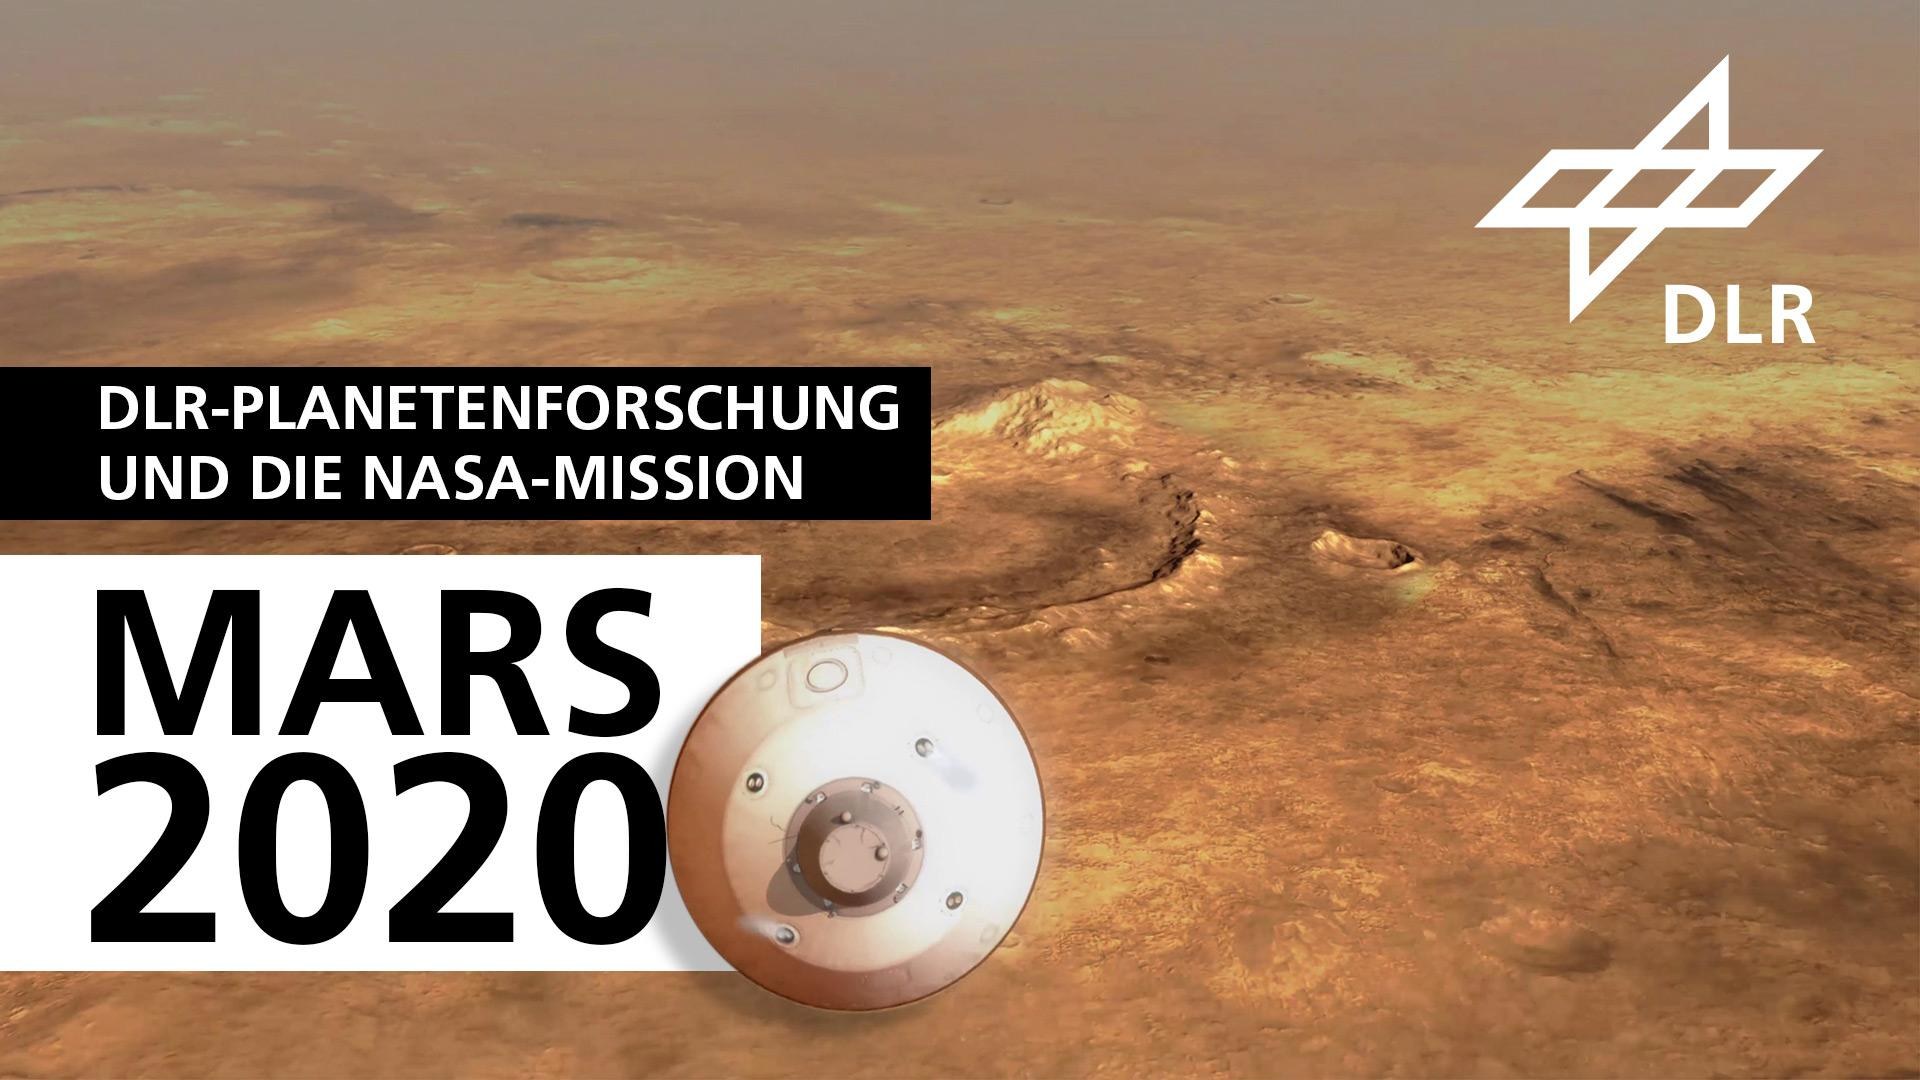 Standbild: Die DLR-Planetenforschung und die NASA-Mission Mars 2020